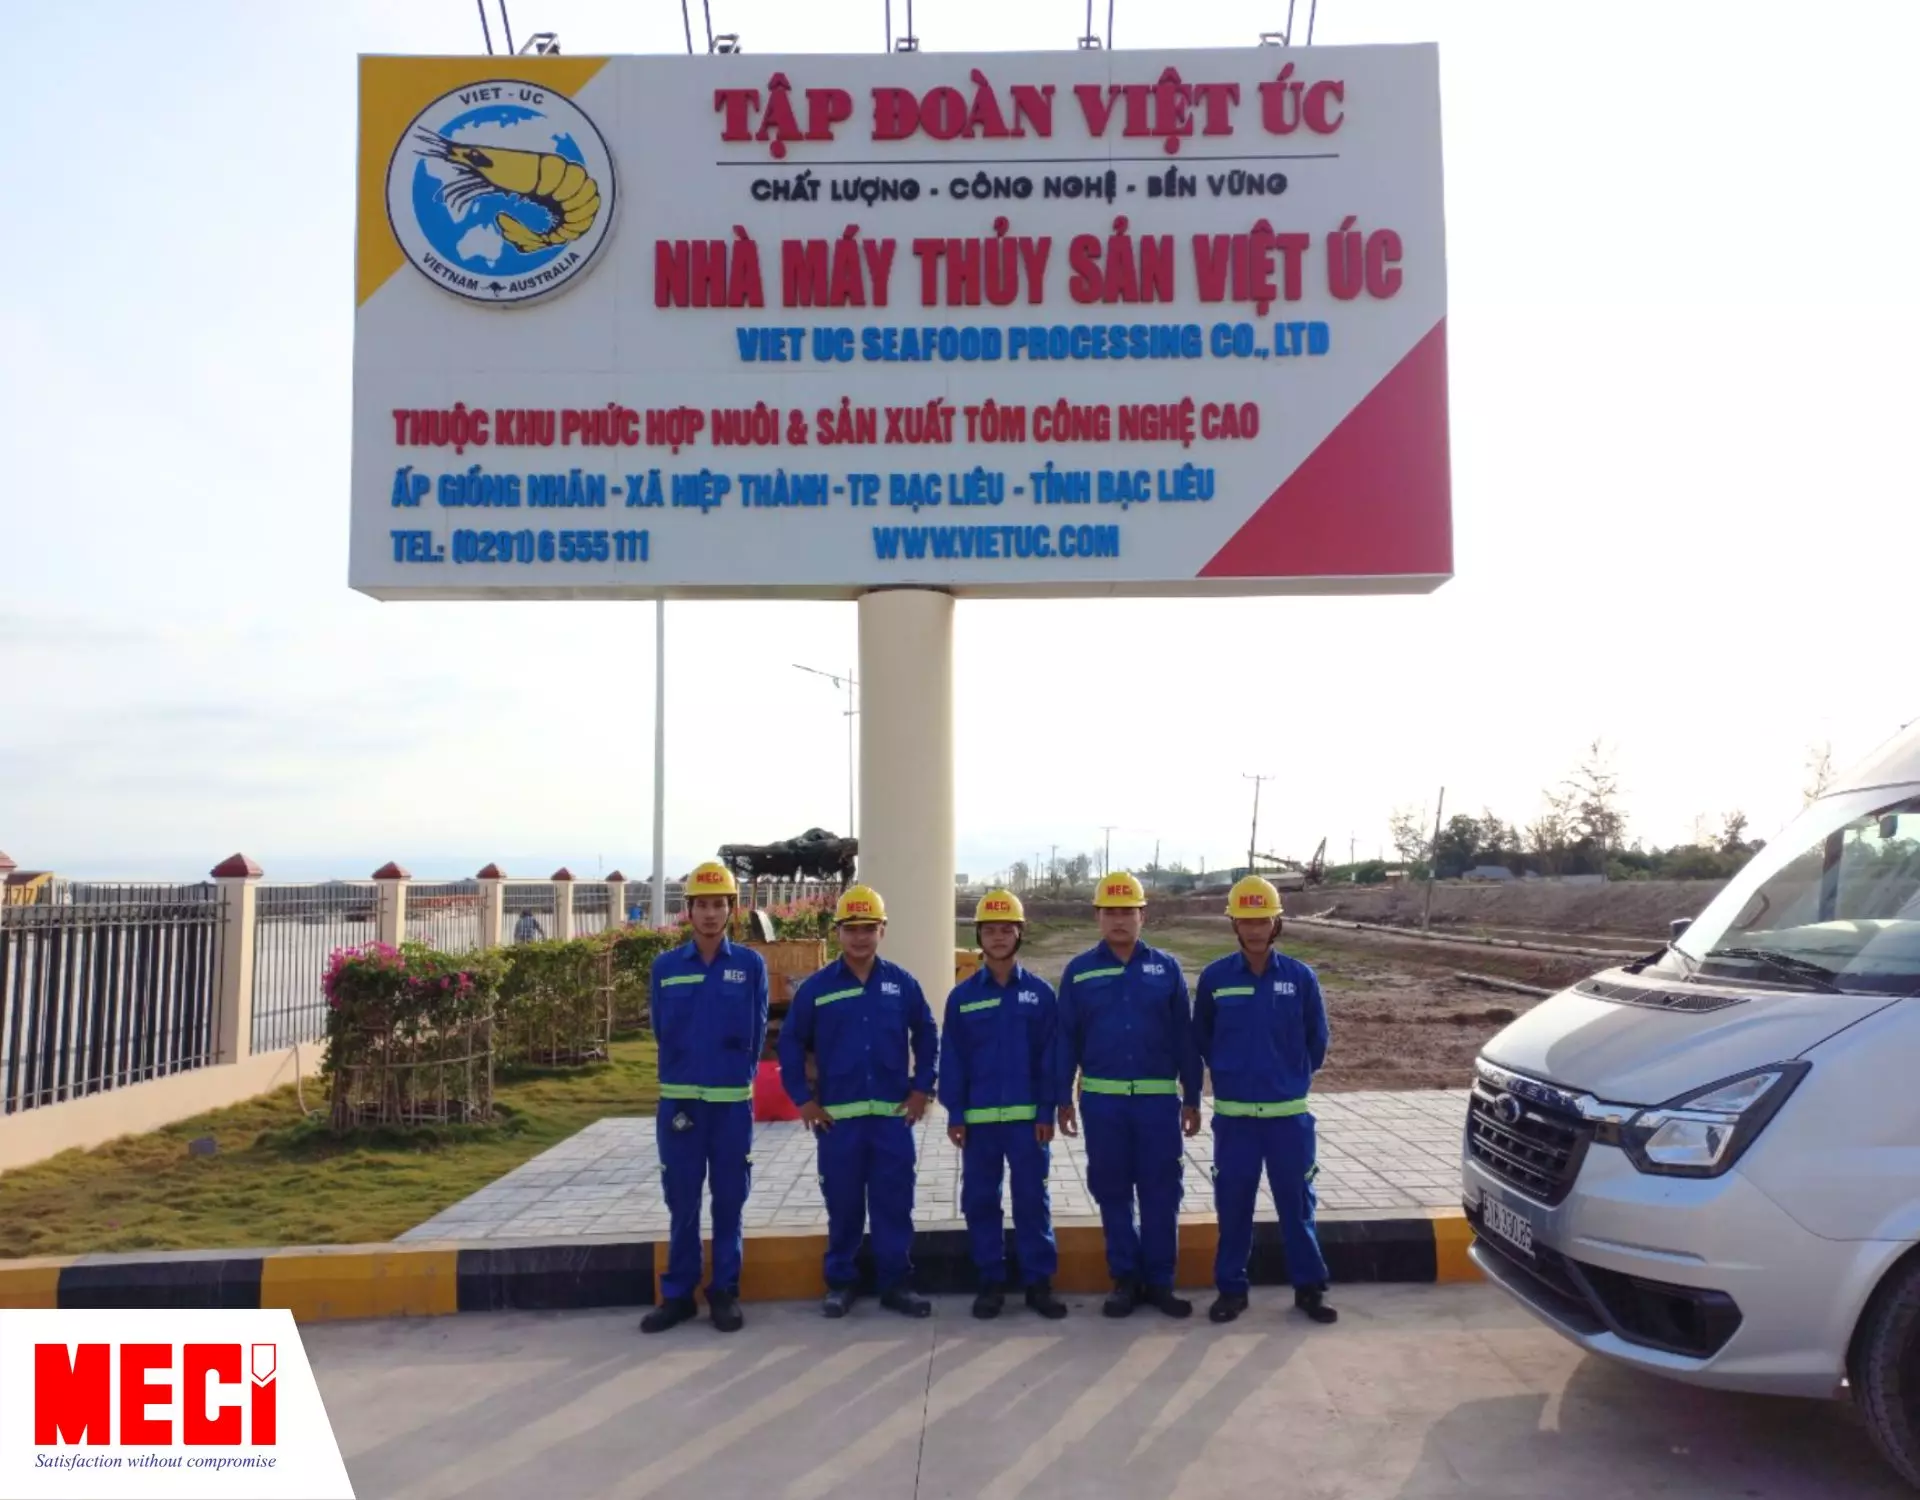 Các kỹ thuật viên MECI đứng trước cổng nhà máy thuỷ sản Việt Úc